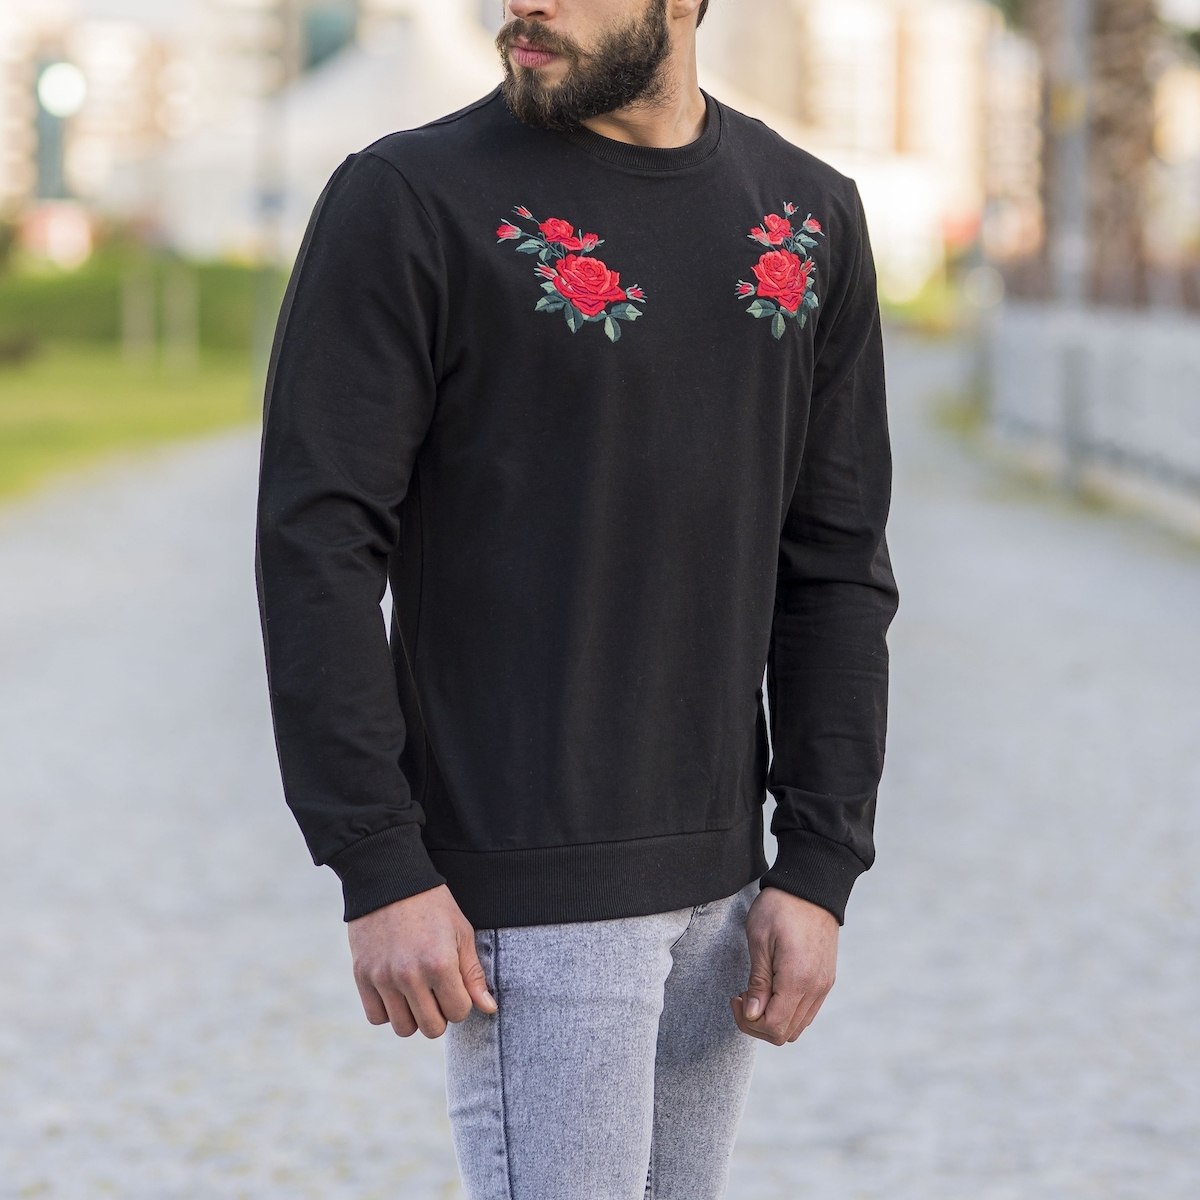 Herren Sweatshirt mit Rosen Details an der Brust in schwarz - 2